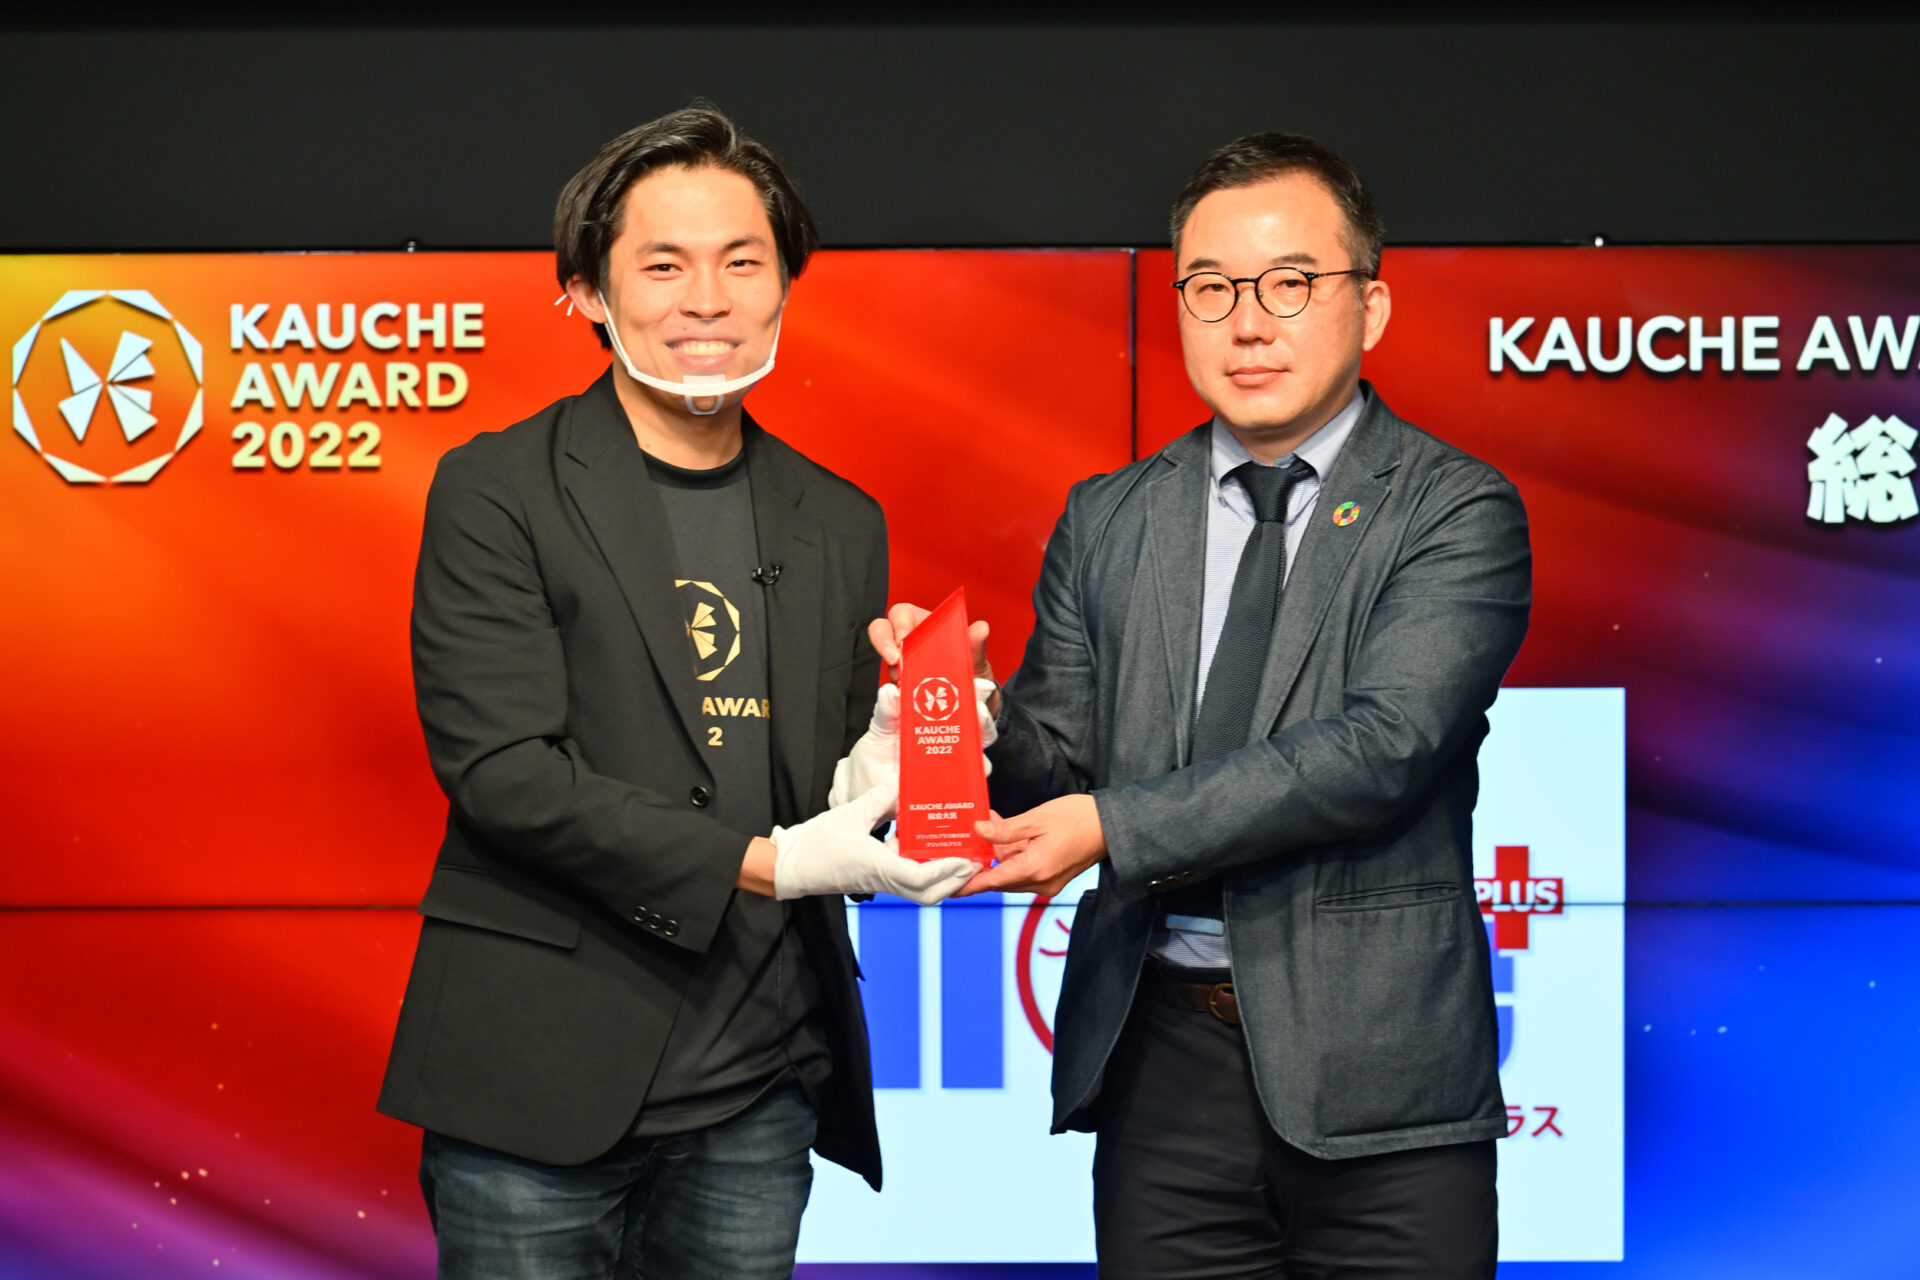 シェア買いアプリ「カウシェ」が、パートナー事業者向けの表彰式「KAUCHE AWARD」を初開催